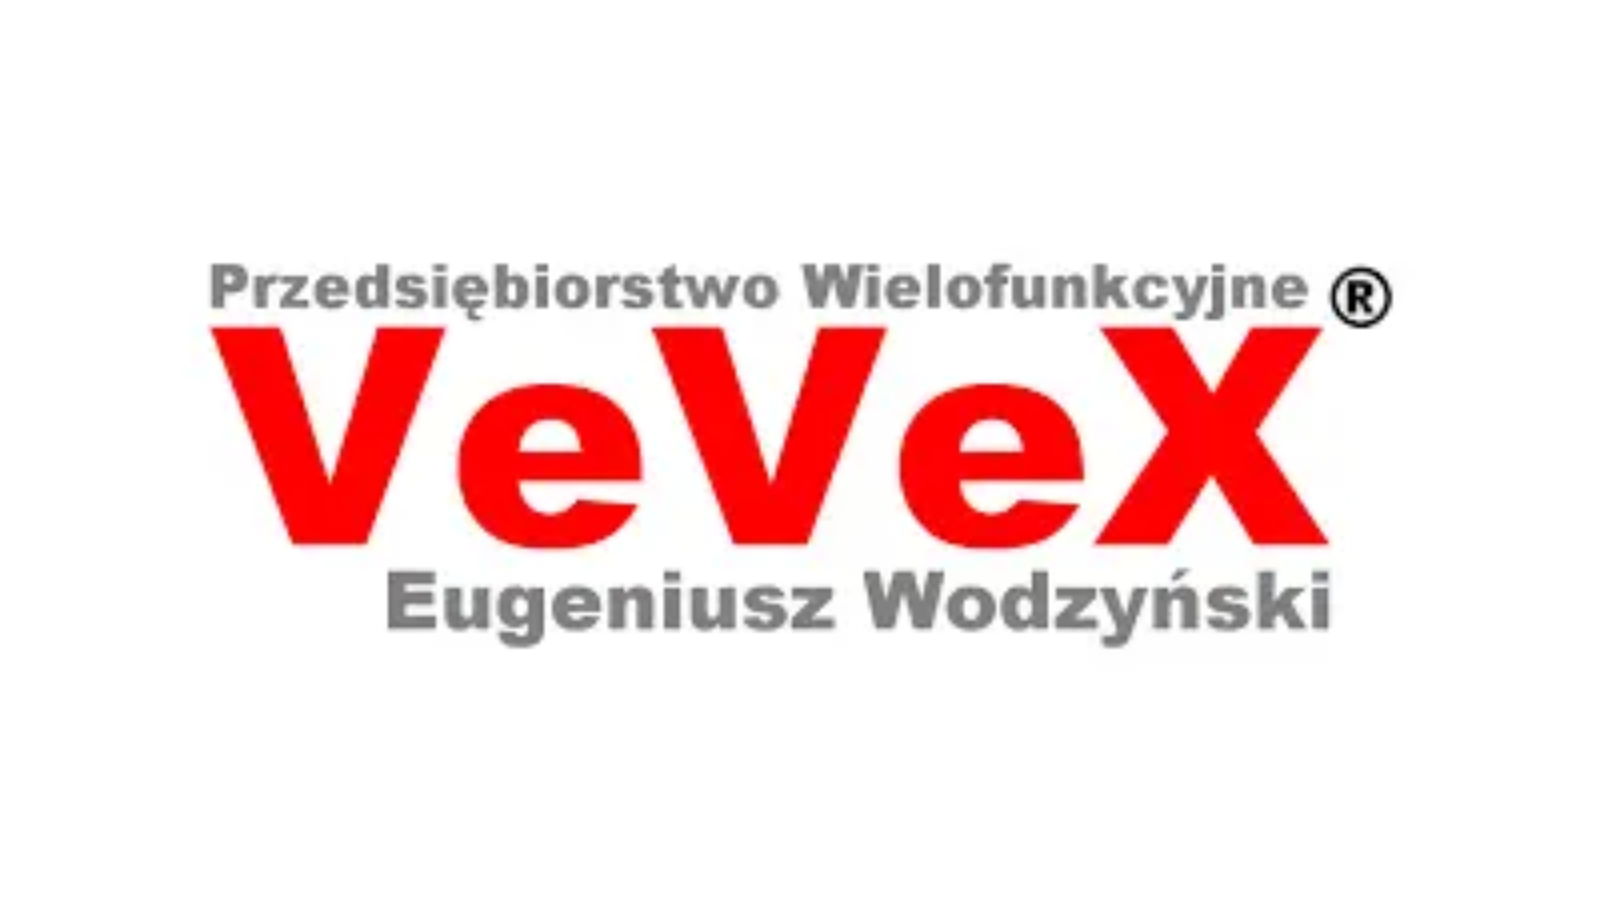 Vevex_logo